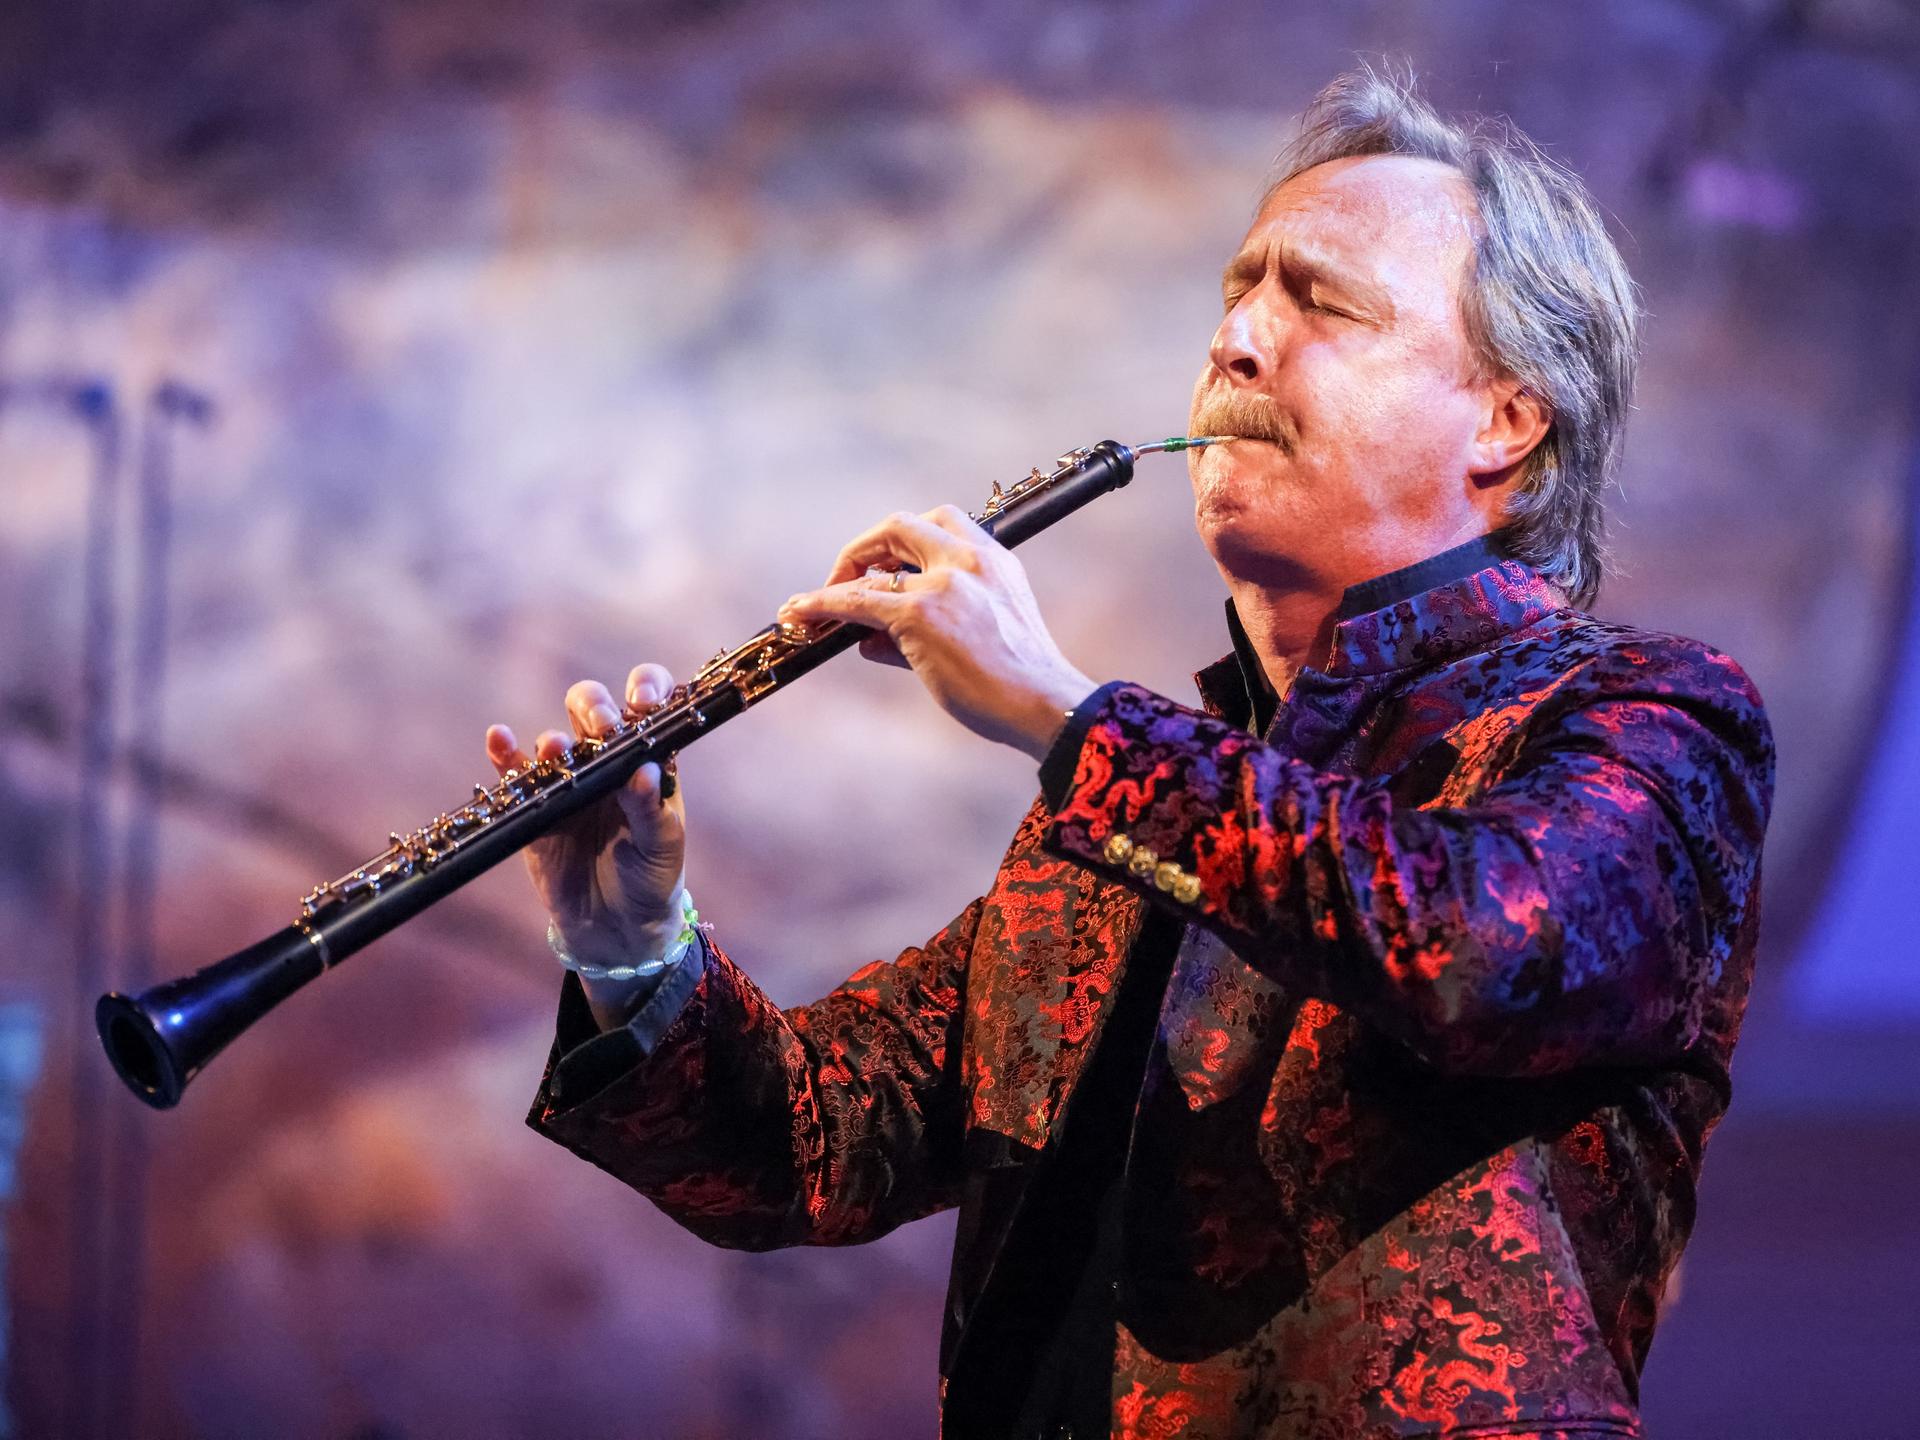 Ein Mann mit graumeliertem Haar spielt eine Oboe. Er trägt einen Oberlippenbart, sein Jackett erscheint in bunten Farben. Der Mann, Albrecht Mayer, ist im Profil zu sehen, er hat beim Spiel die Augen geschlossen. 